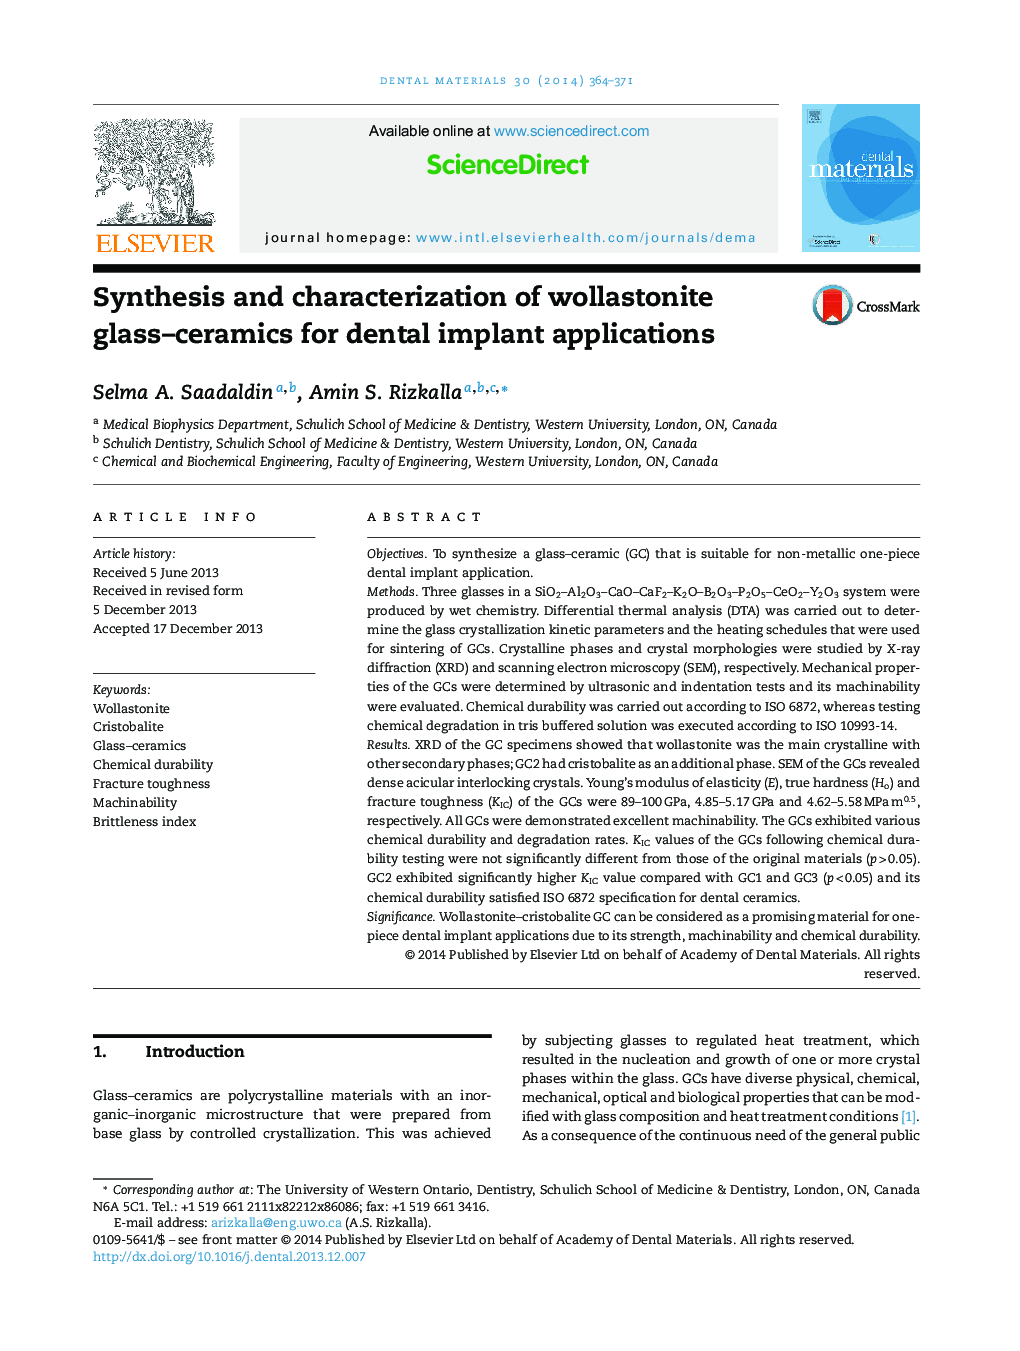 سنتز و مشخصه شیشه ولاستونیت سرامیک برای برنامه های کاربردی ایمپلنت دندان 